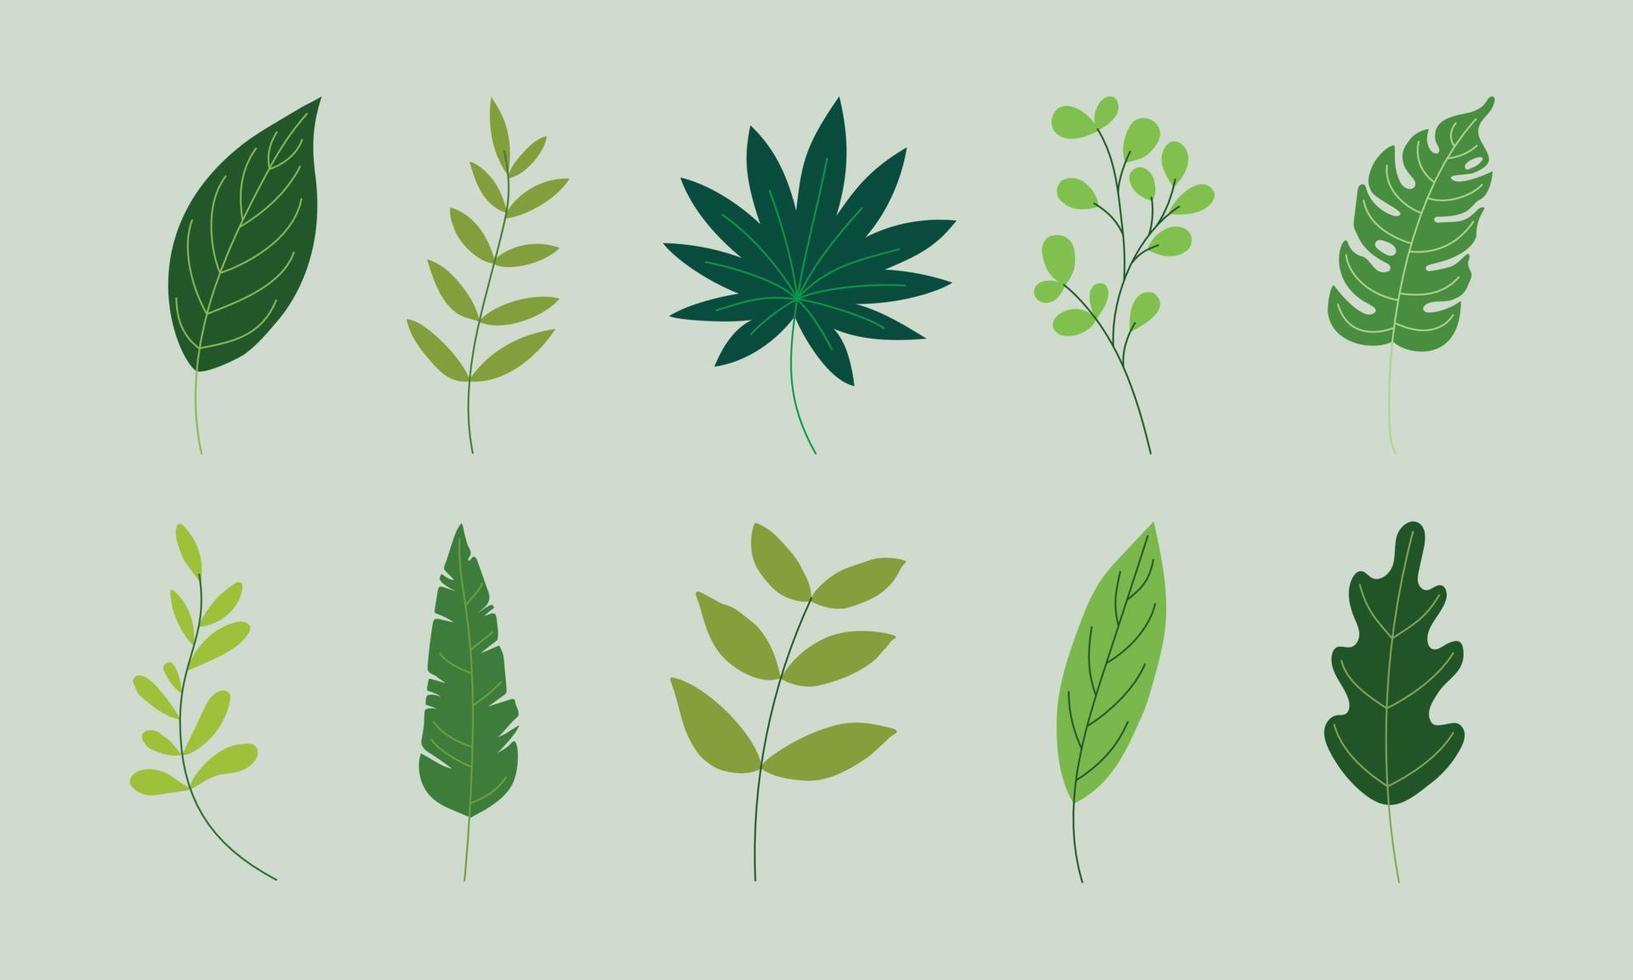 Varias hojas verdes ilustración en gráficos vectoriales. la colección de follaje tropical aislada en verde. ilustración plana para patrón, elemento decorativo, impresión artística, etc. vector